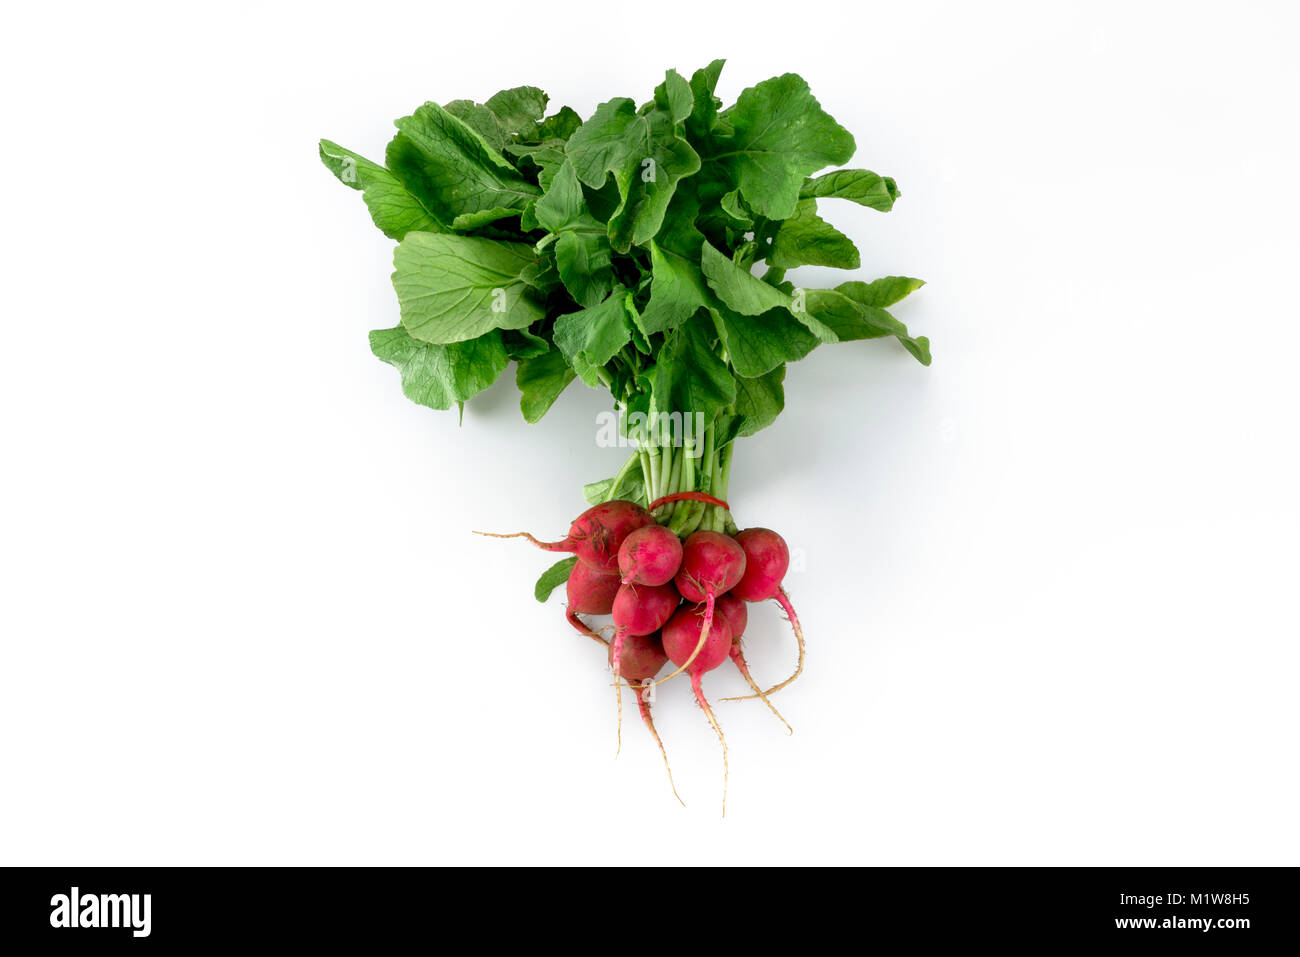 Bundled fresh organic red radish vegetable isolated in white background Stock Photo